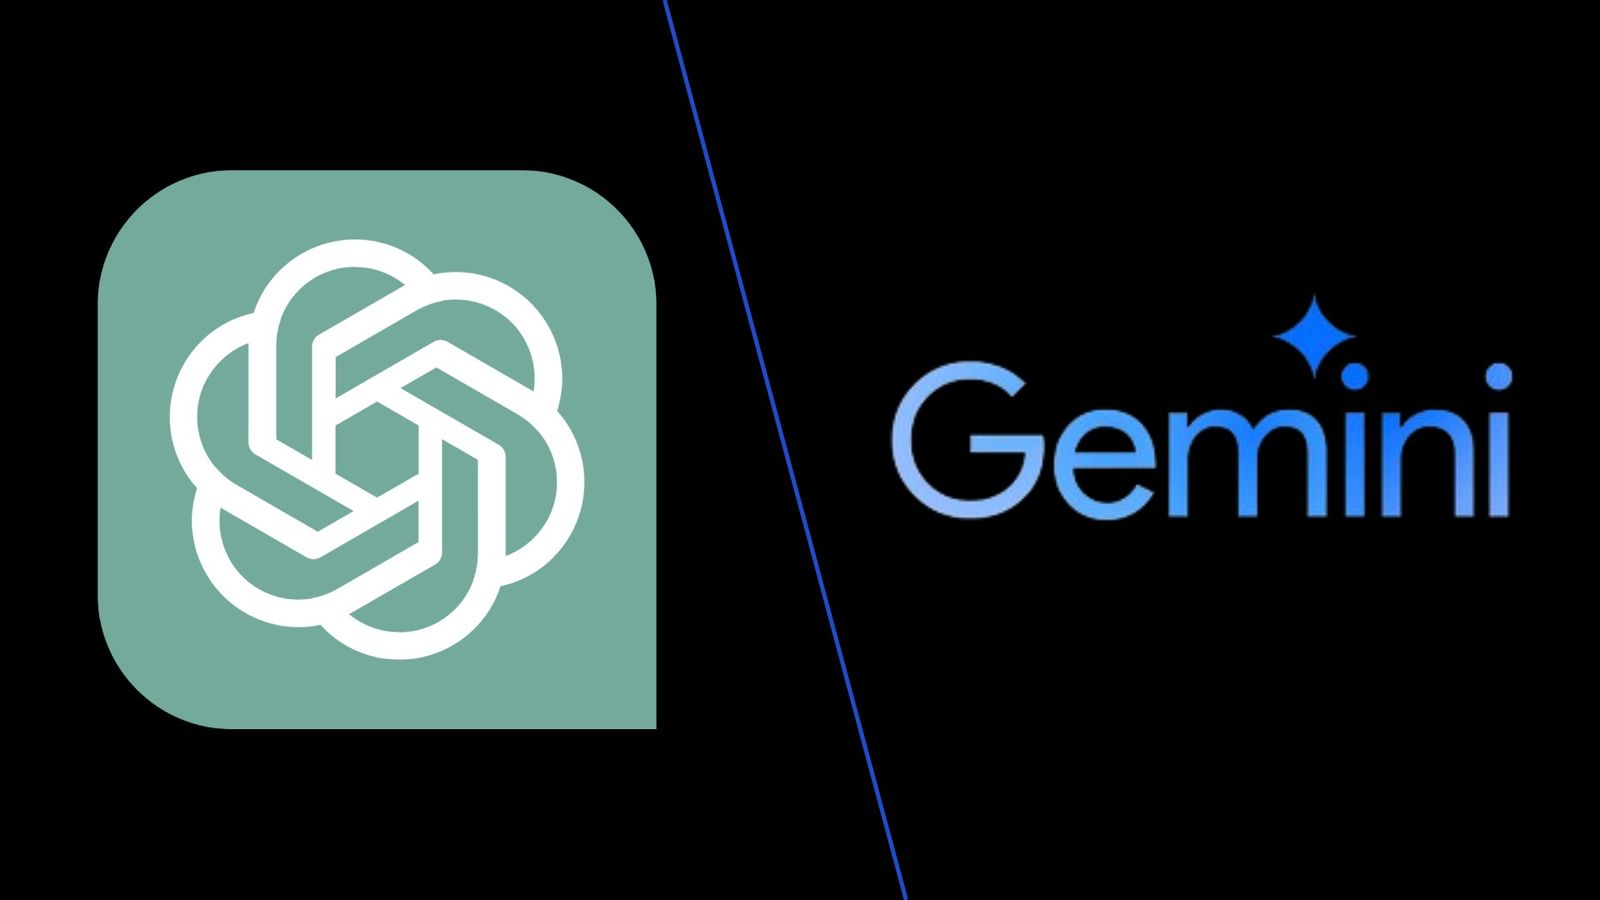 Google Gemini vs ChatGPT 4 - An image of logos of ChatGPT and Gemini